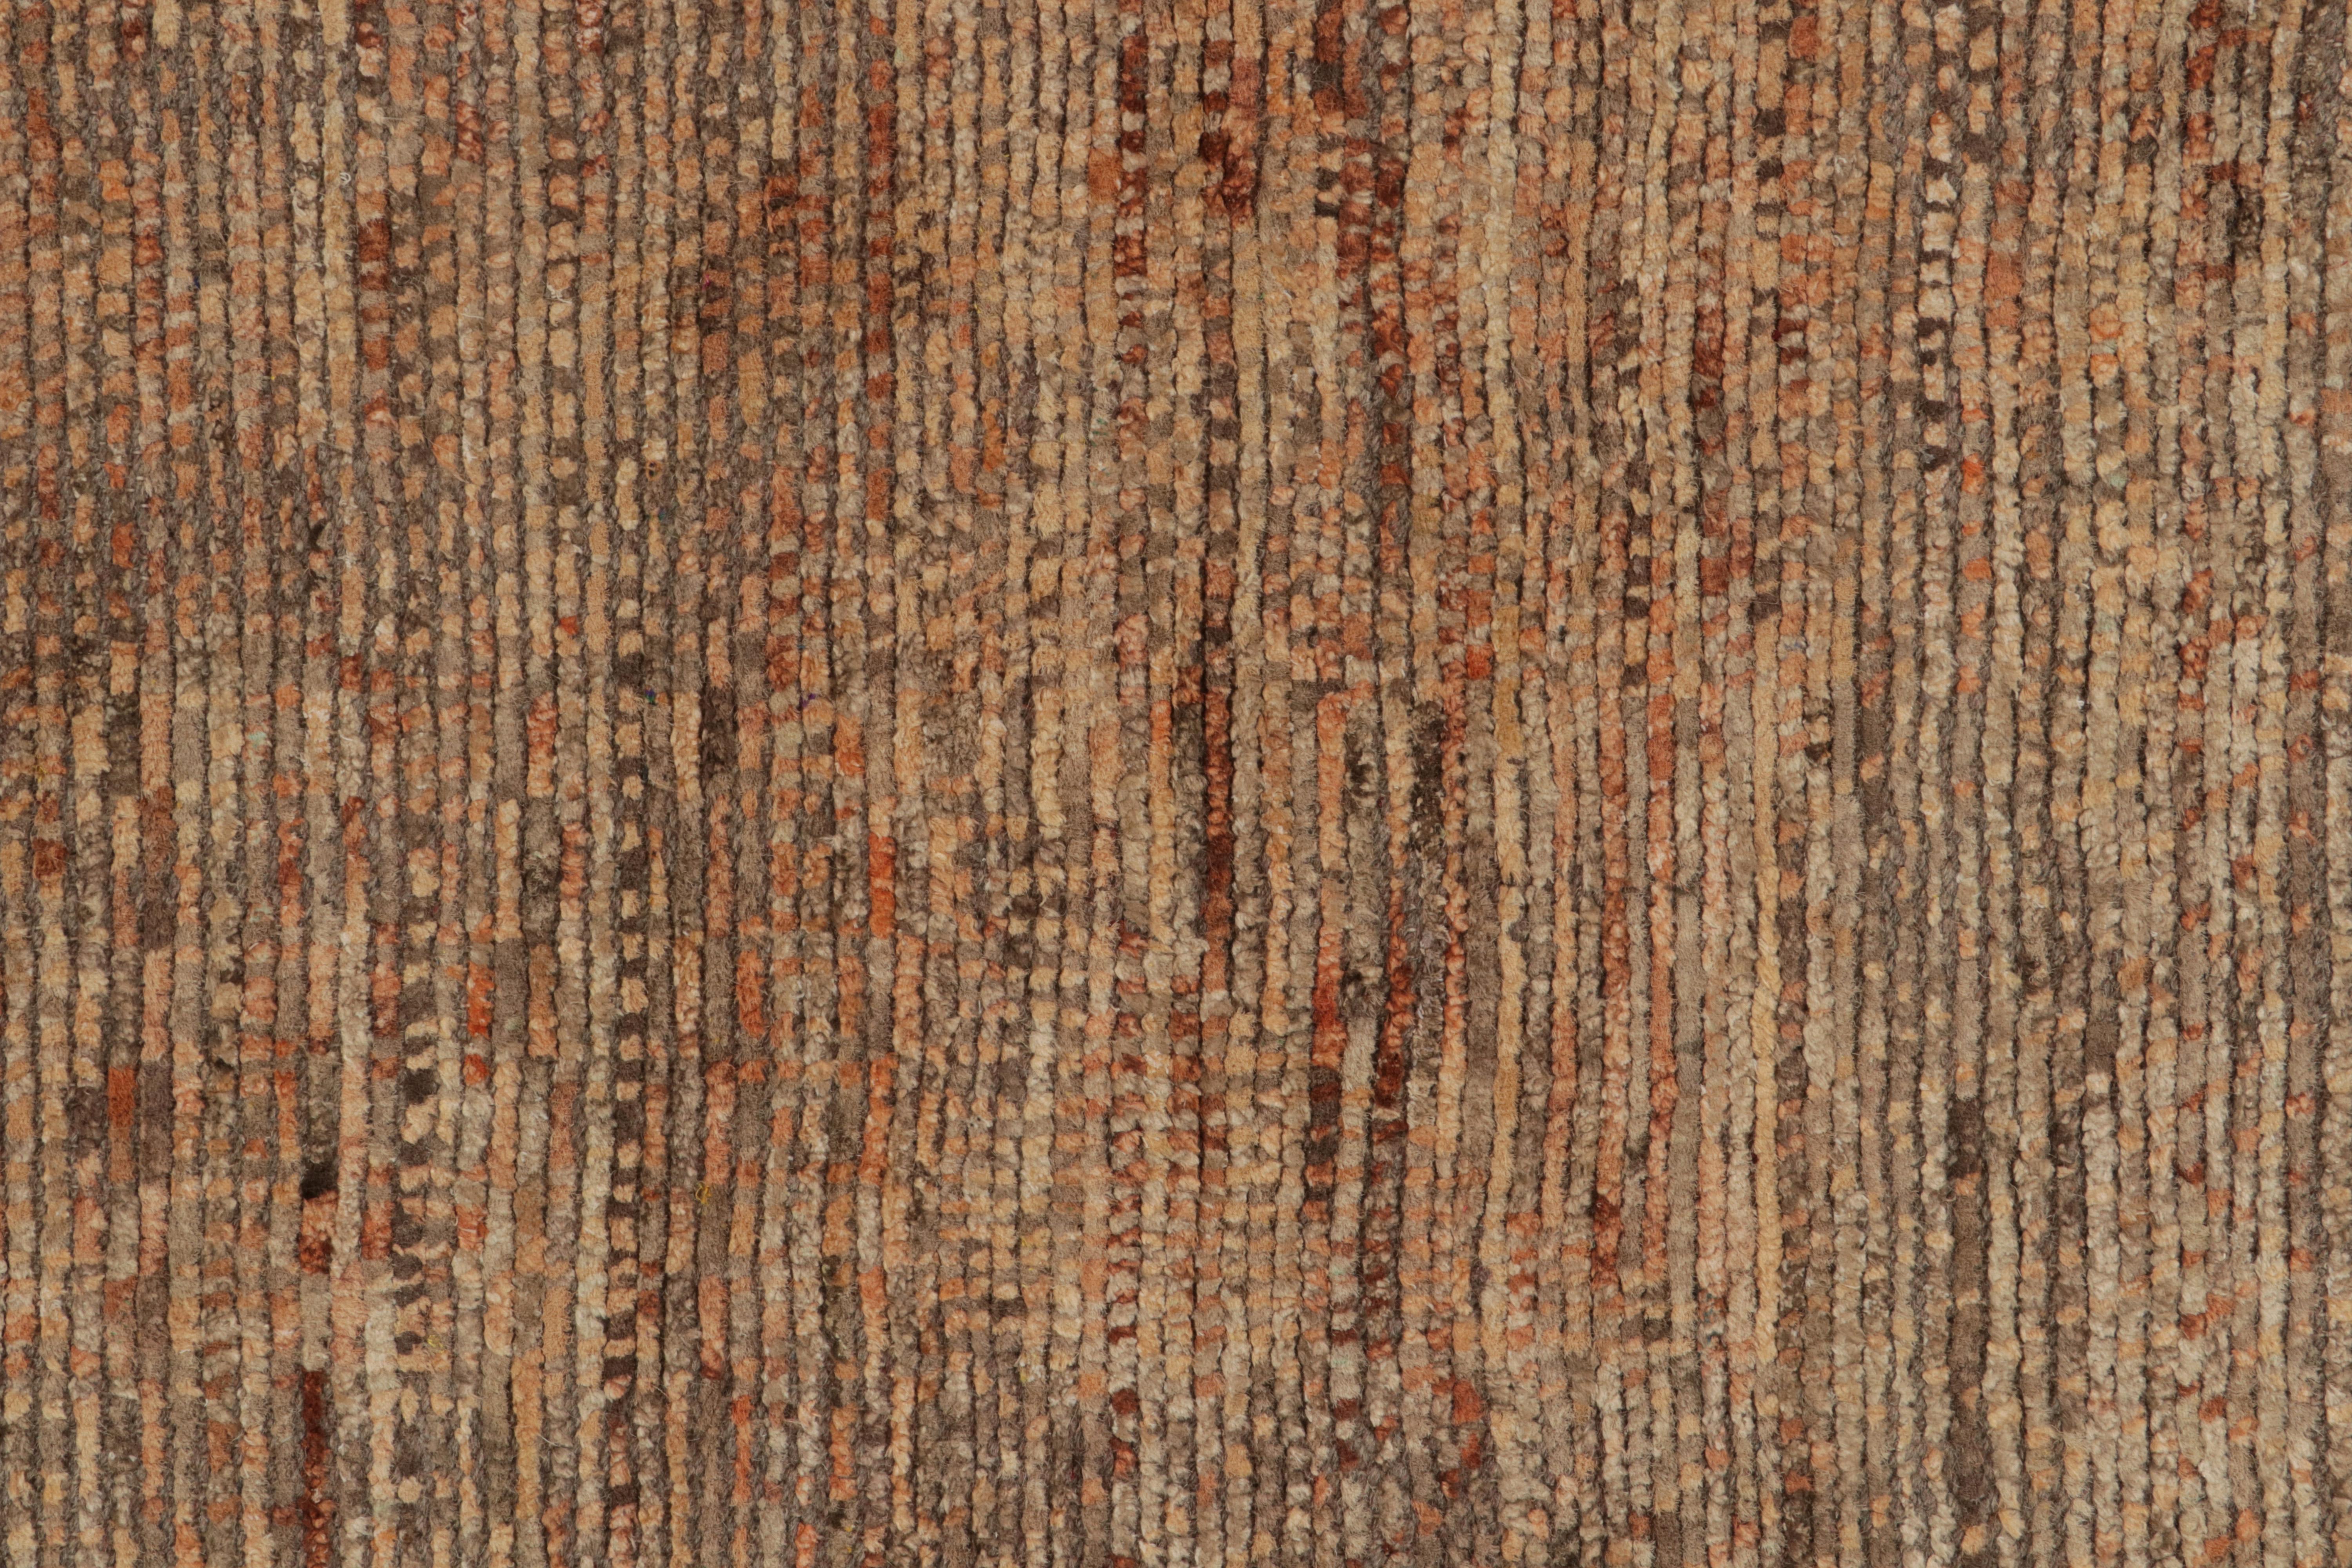 Rug & Kilim's Modern Modern Textural Rug in Beige-Brown and Orange Striae Patterns (tapis à texture moderne aux motifs beige-marron et orange)